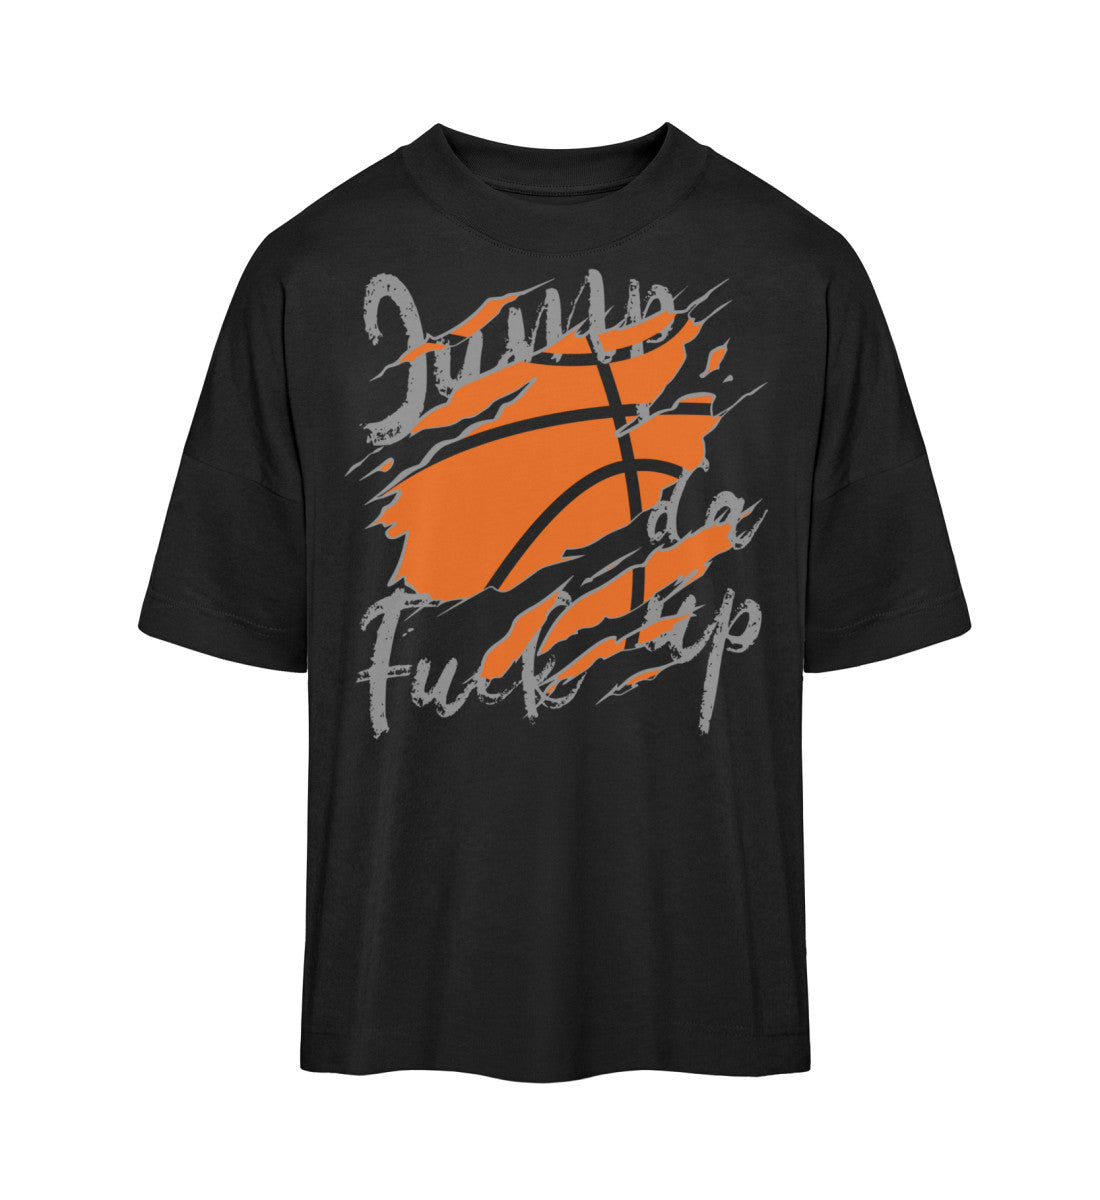 Schwarzes T-Shirt Damen Herren Unisex mit Print Design der Basketball Downtown Kollektion von Roger Rockawoo Clothing